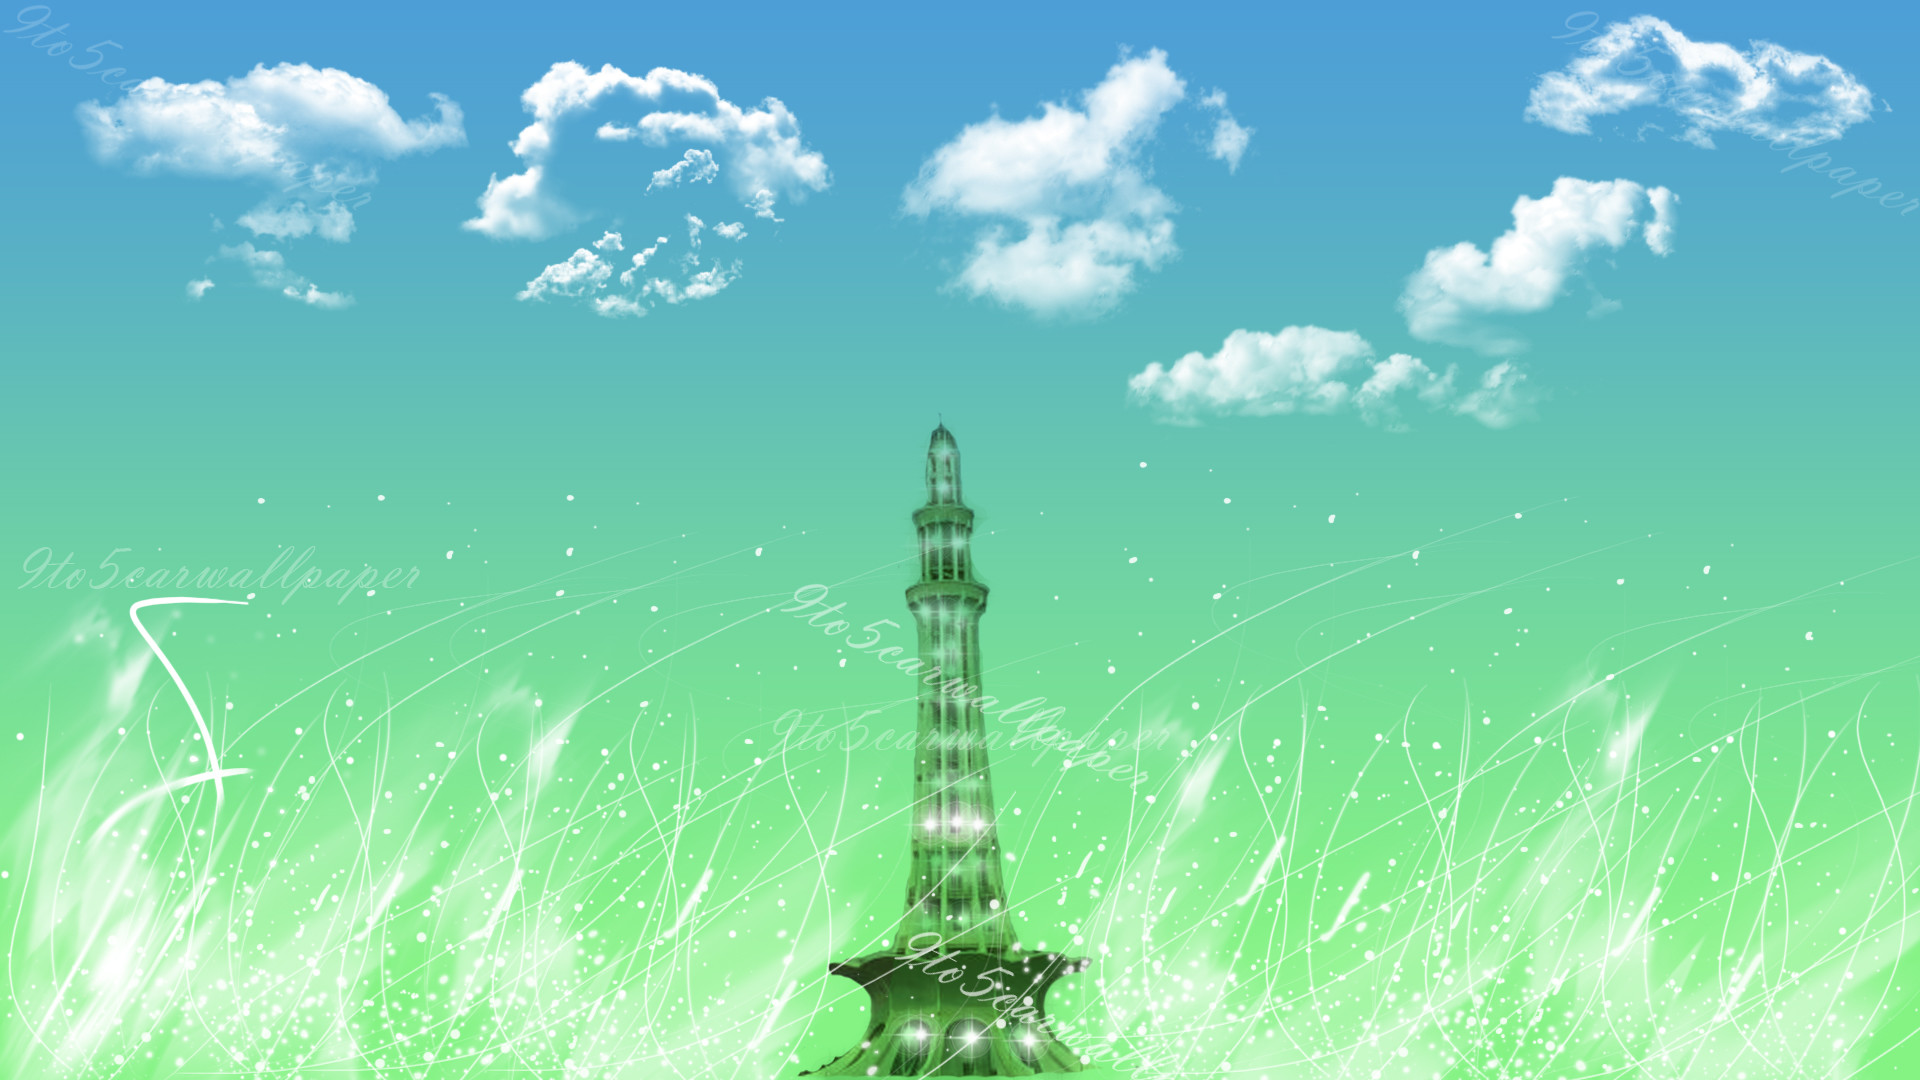 carta da parati in pakistan,verde,cielo,torre,paesaggio,guglia